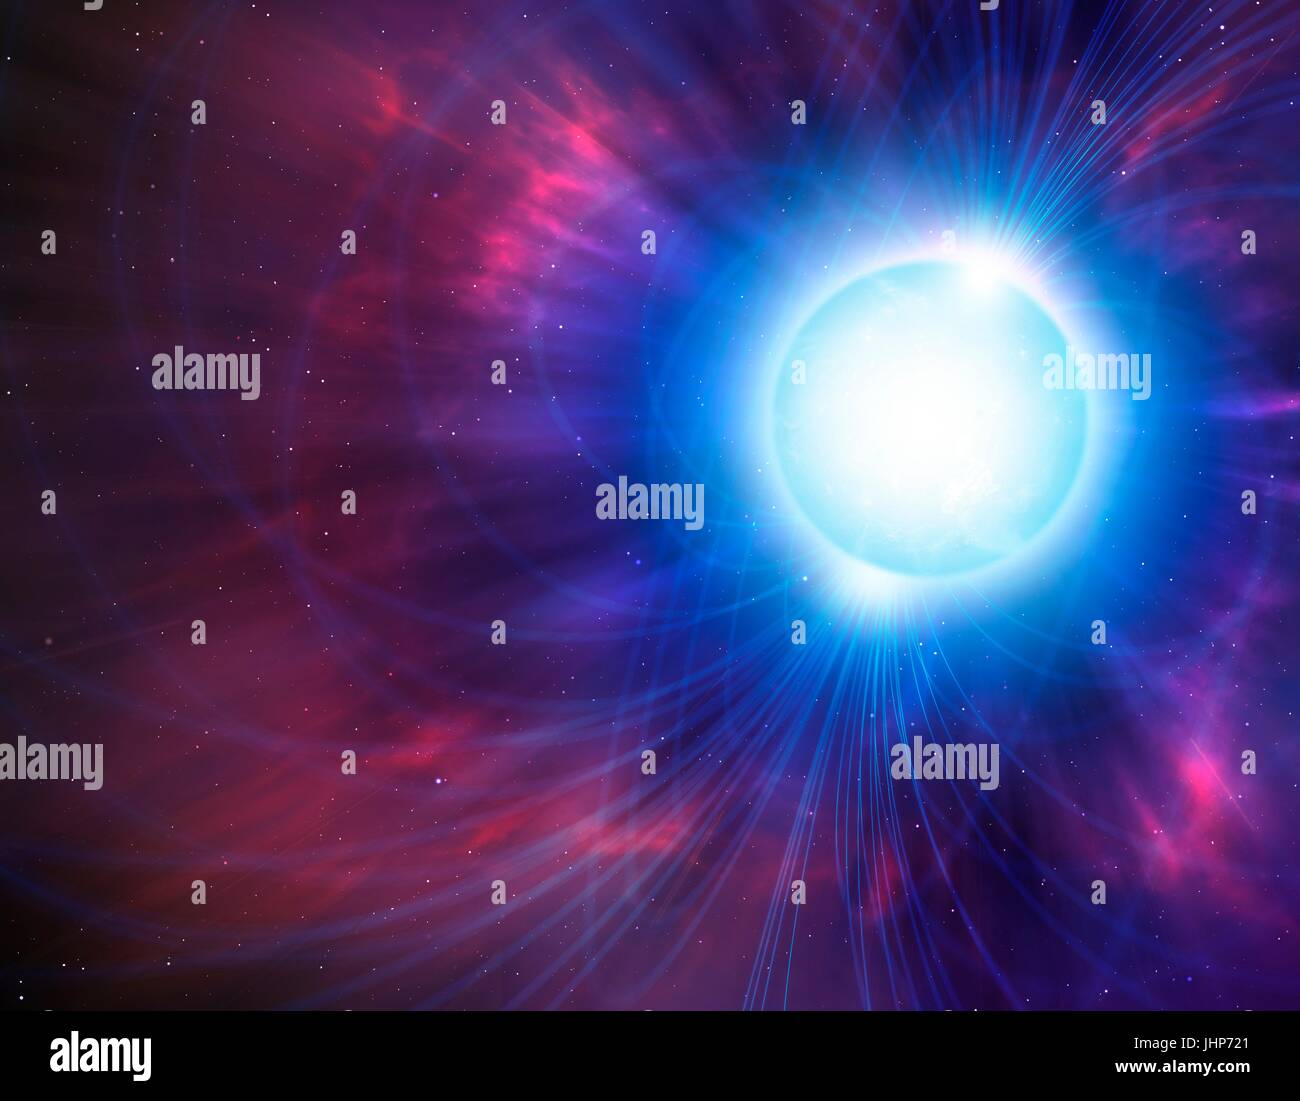 Computer grafica che mostra il campo magnetico (linee) intorno a un magnetar. Un magnetar è un tipo di stella di neutroni con un incredibilmente forte campo magnetico (un milione di miliardi di volte più forte di quella della Terra), che è formata quando alcune stelle subiscono una esplosione di supernovae. Foto Stock